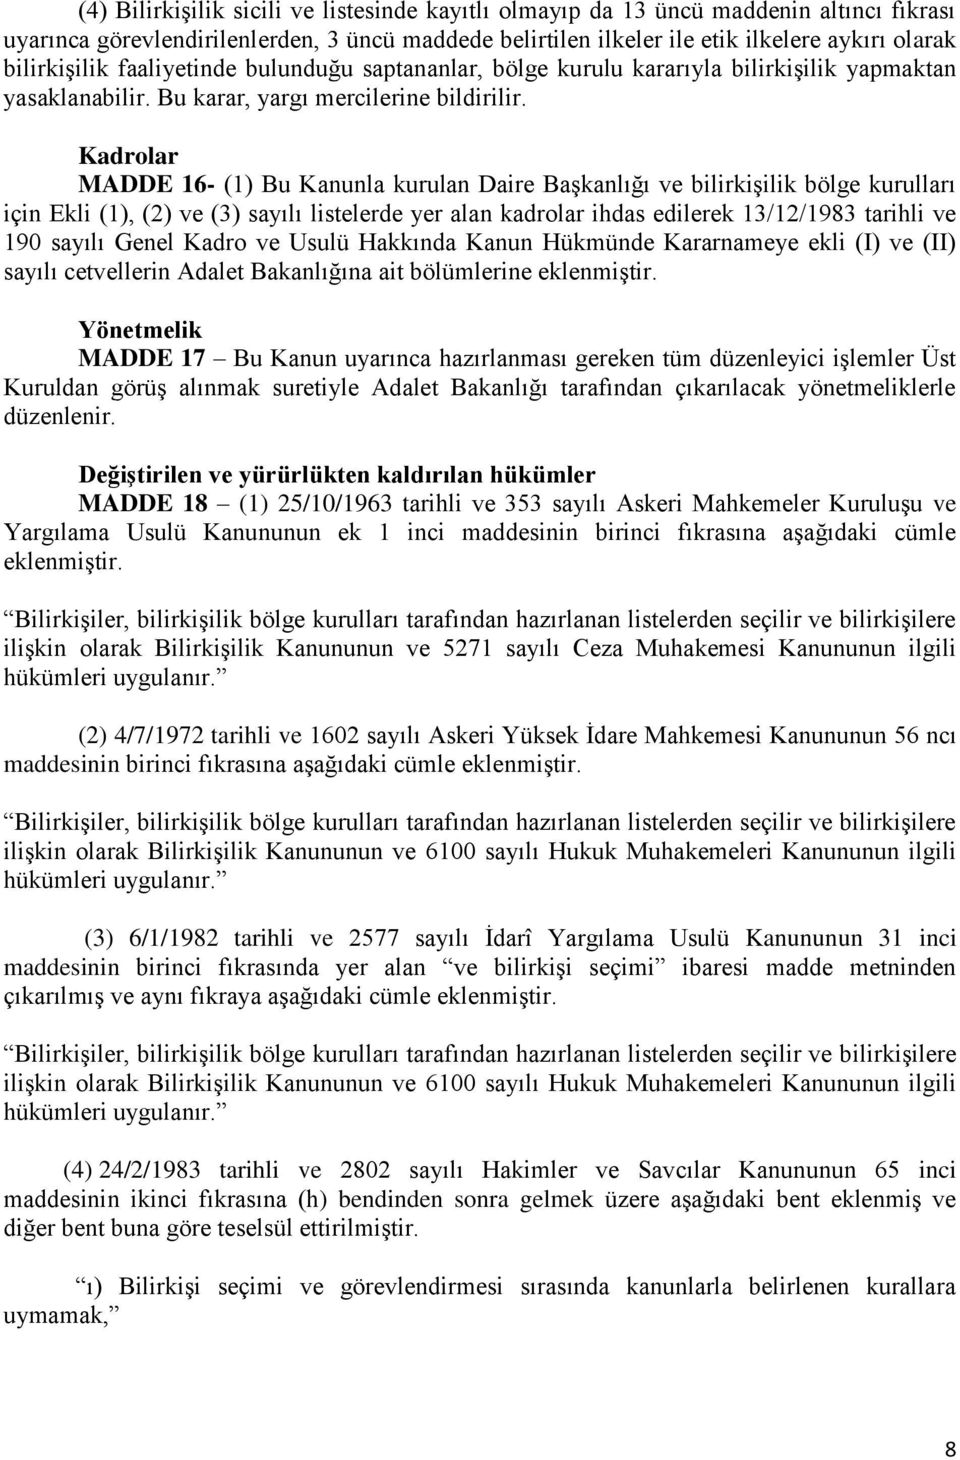 Kadrolar MADDE 16- (1) Bu Kanunla kurulan Daire BaĢkanlığı ve bilirkiģilik bölge kurulları için Ekli (1), (2) ve (3) sayılı listelerde yer alan kadrolar ihdas edilerek 13/12/1983 tarihli ve 190